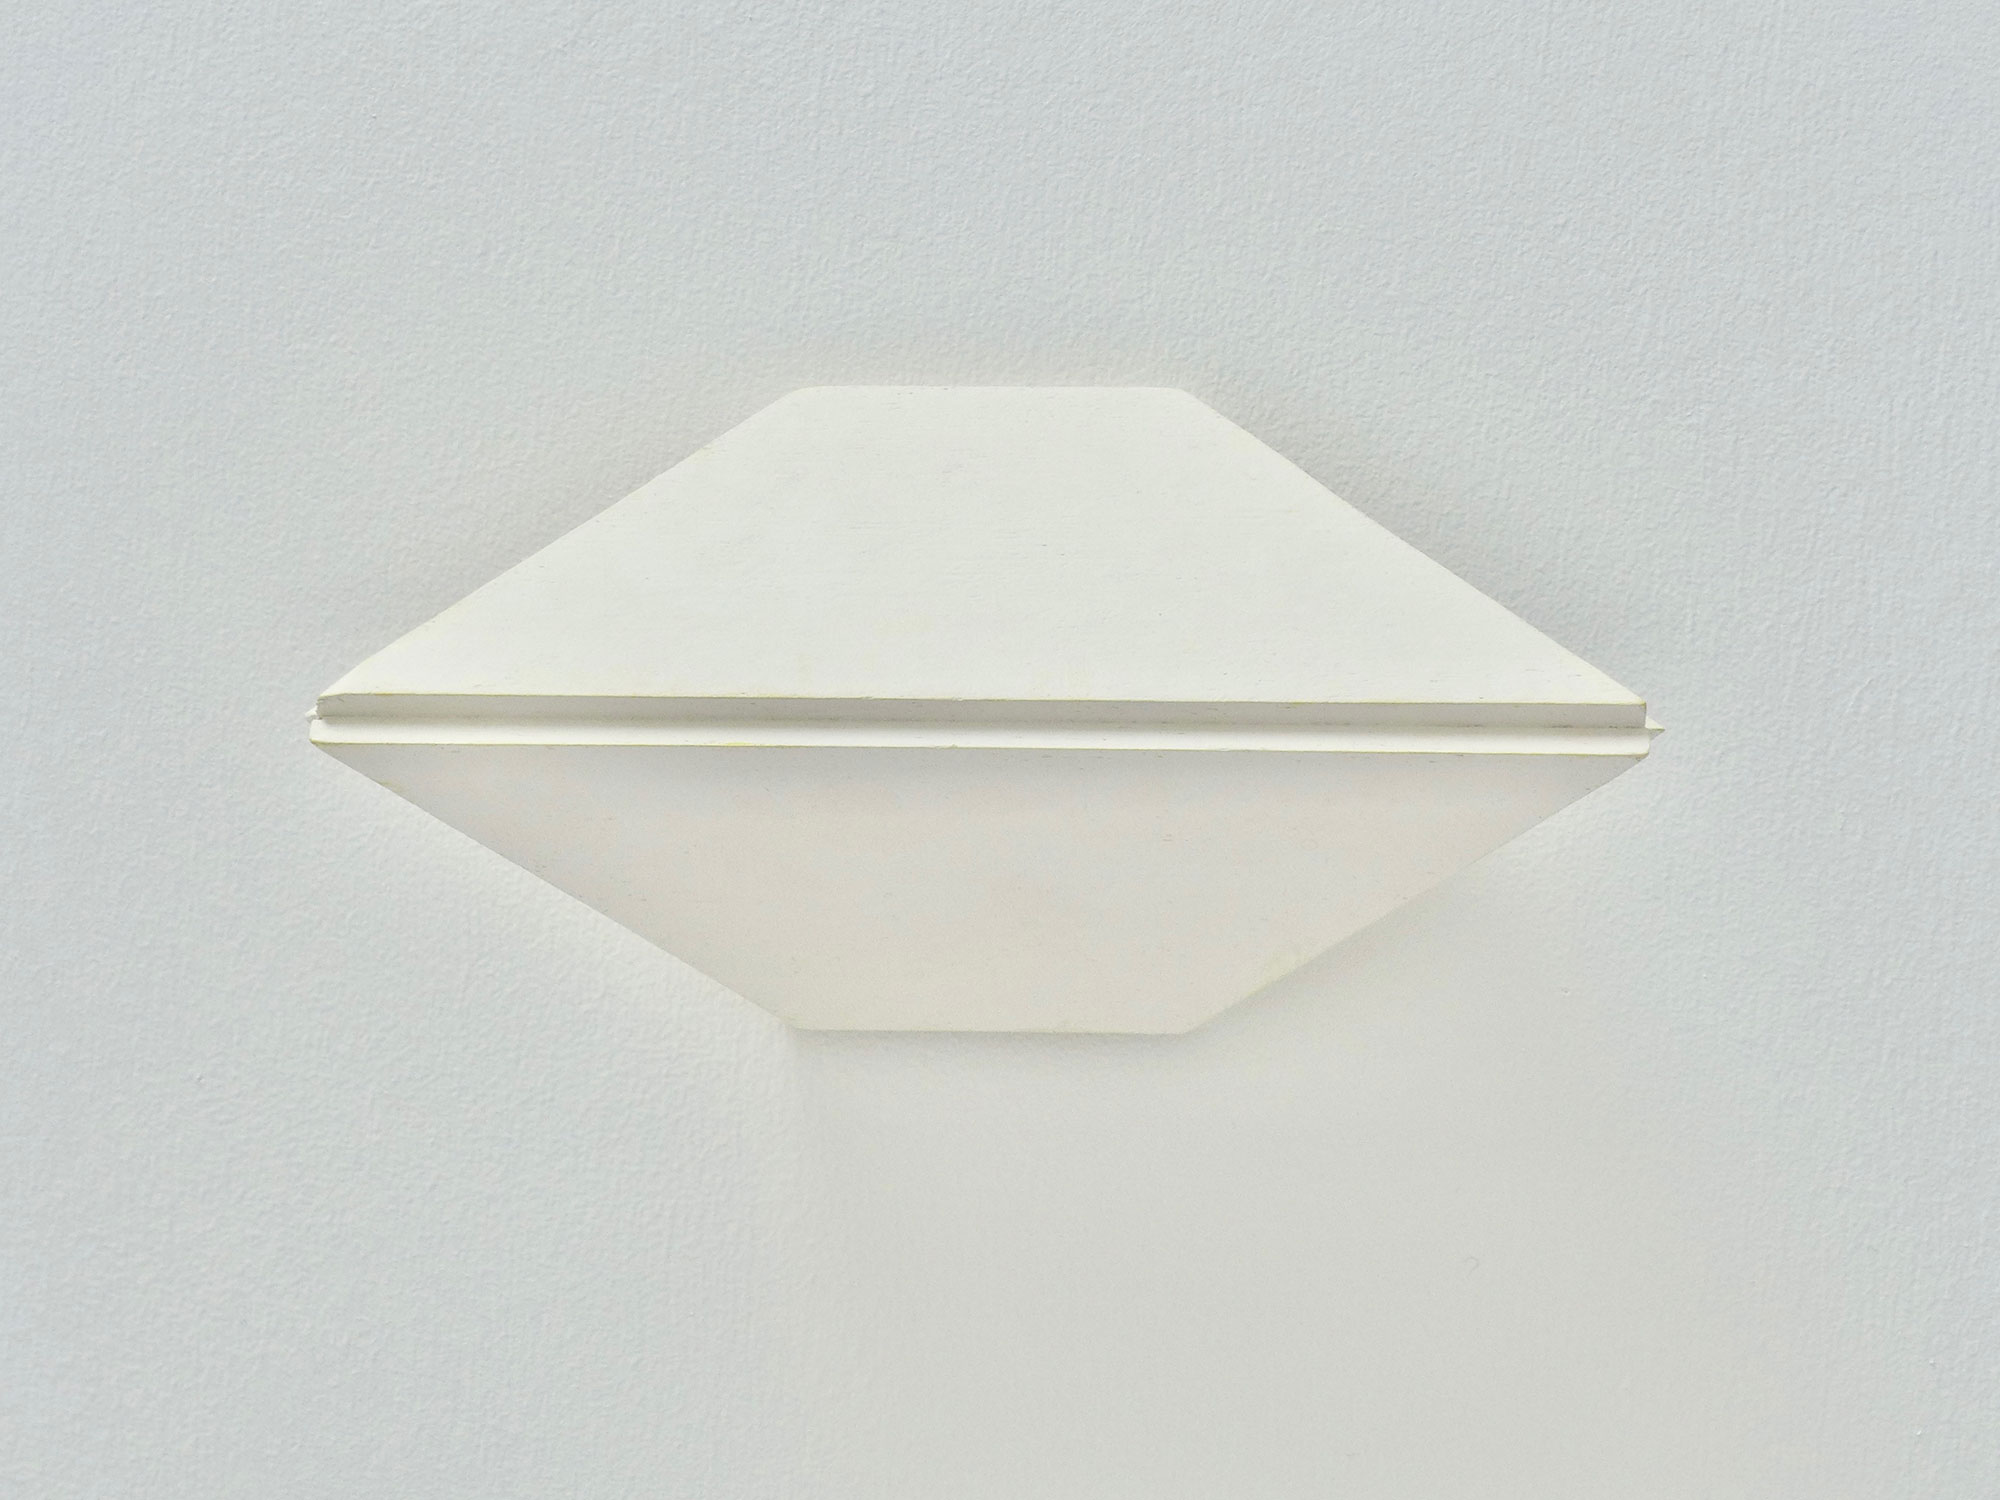 Kenneth Dingwall, The Same But II, 2012, gouache on basswood, 11 x 21 x 7cm